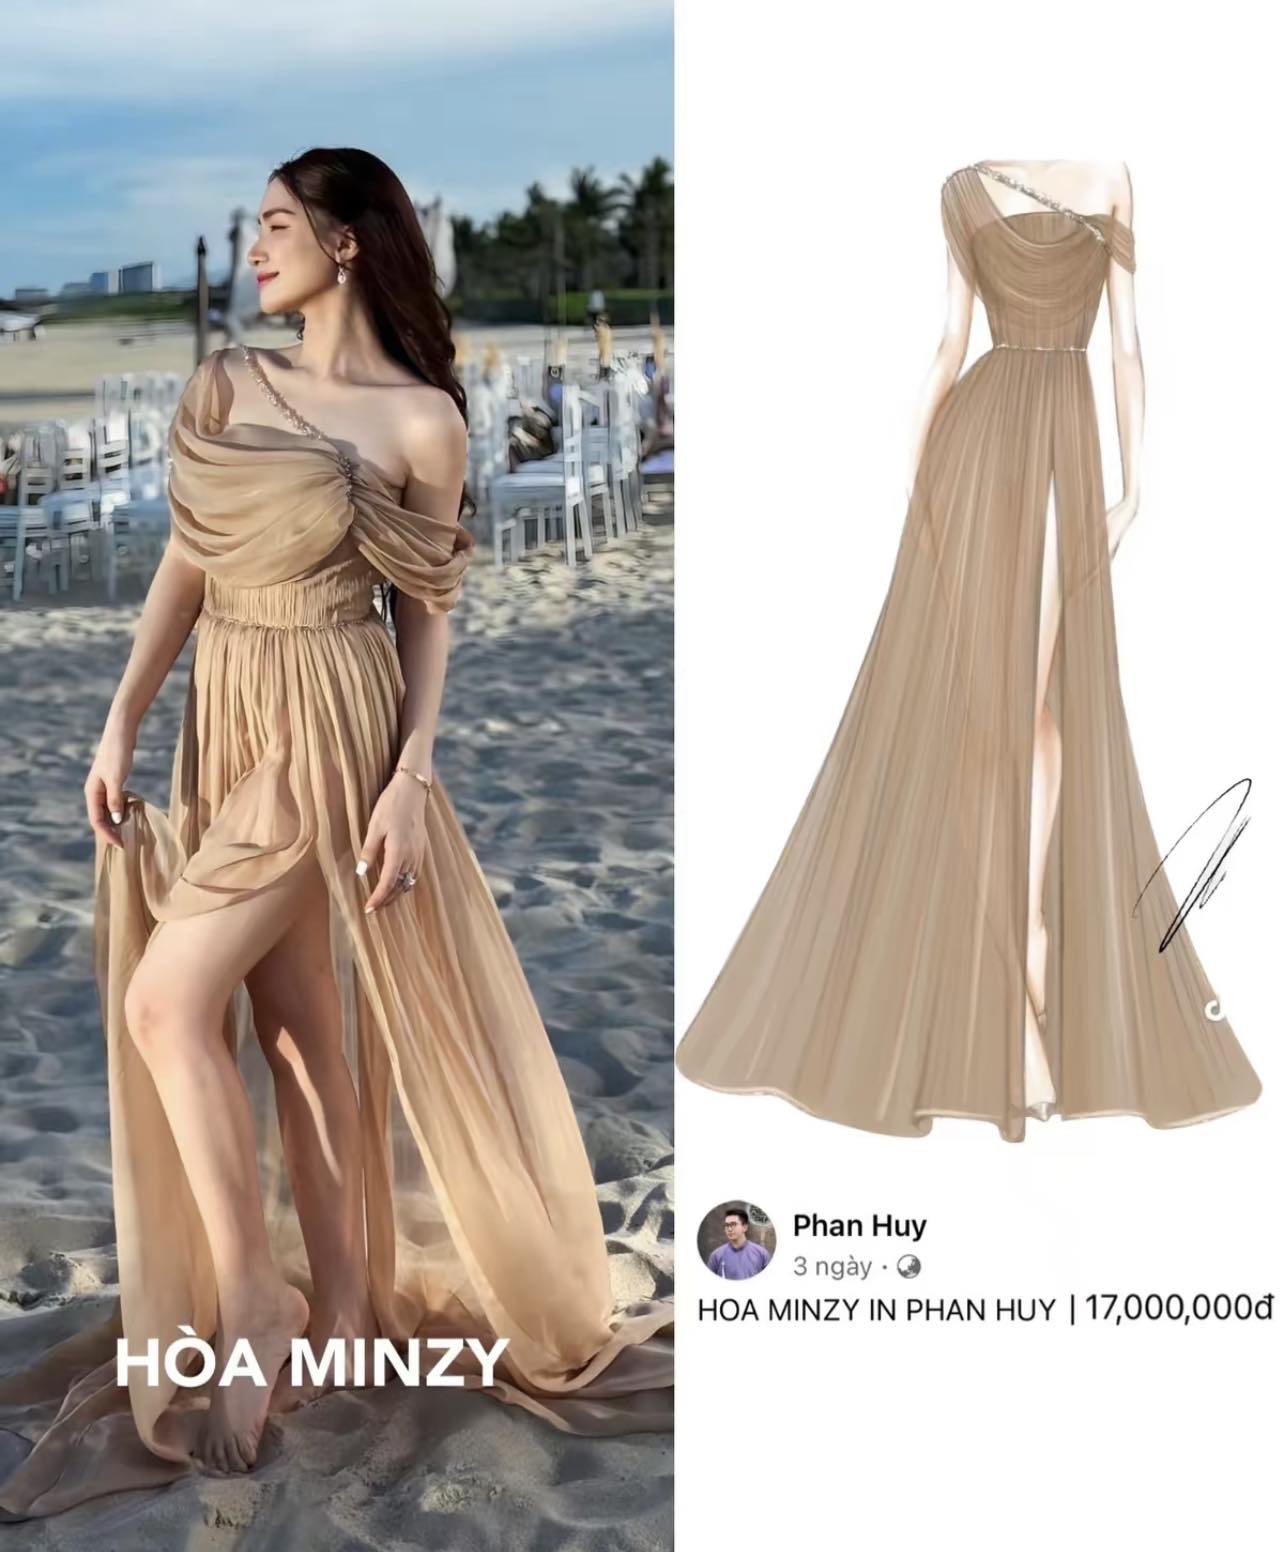 Hòa Minzy với chiếc váy 17 triệu đồng gây ấn tượng mạnh